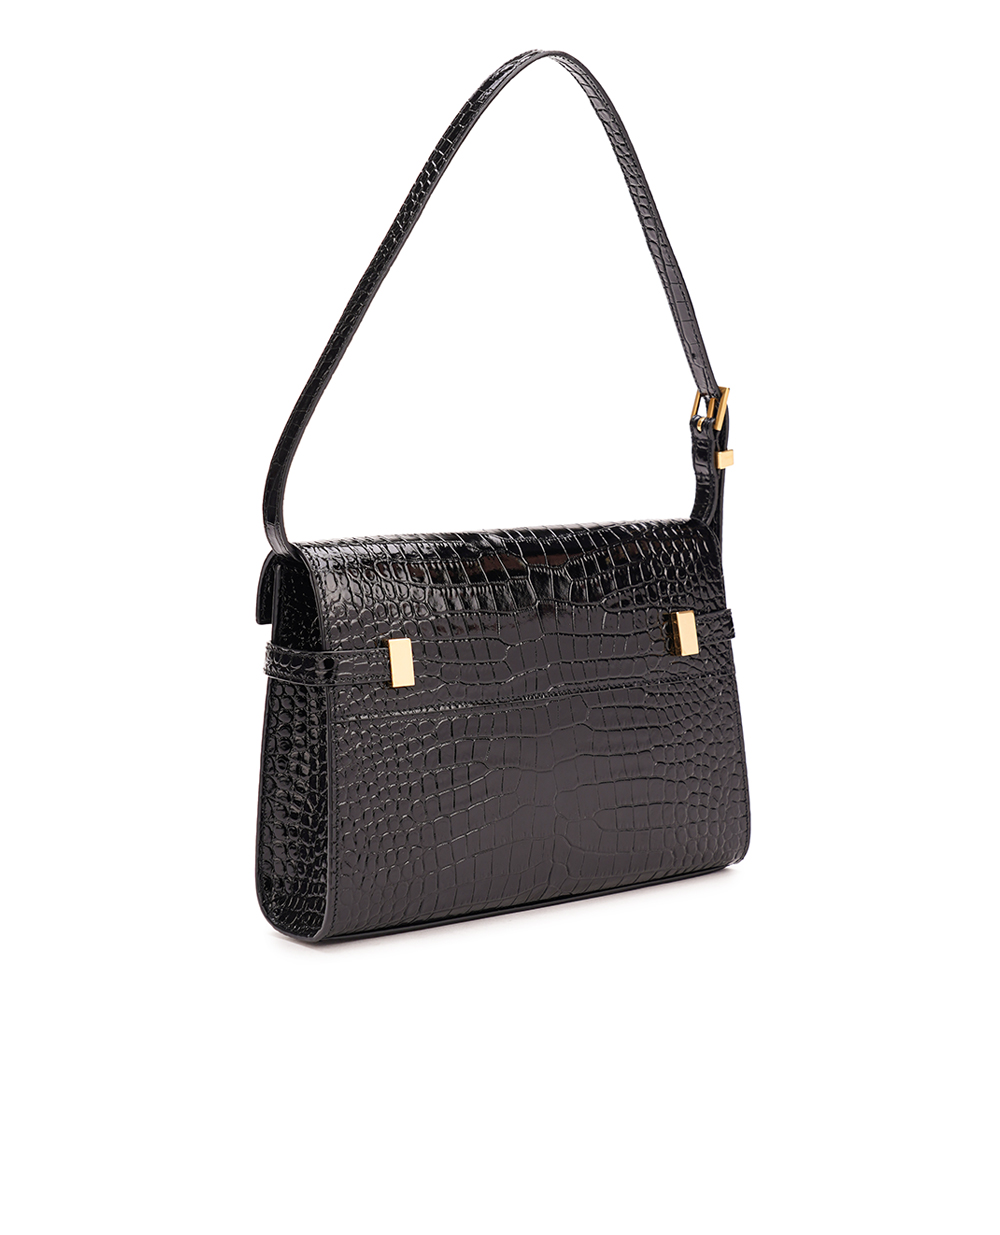 Кожаная сумка Manhattan Small Saint Laurent 675626-DND0W, черный цвет • Купить в интернет-магазине Kameron